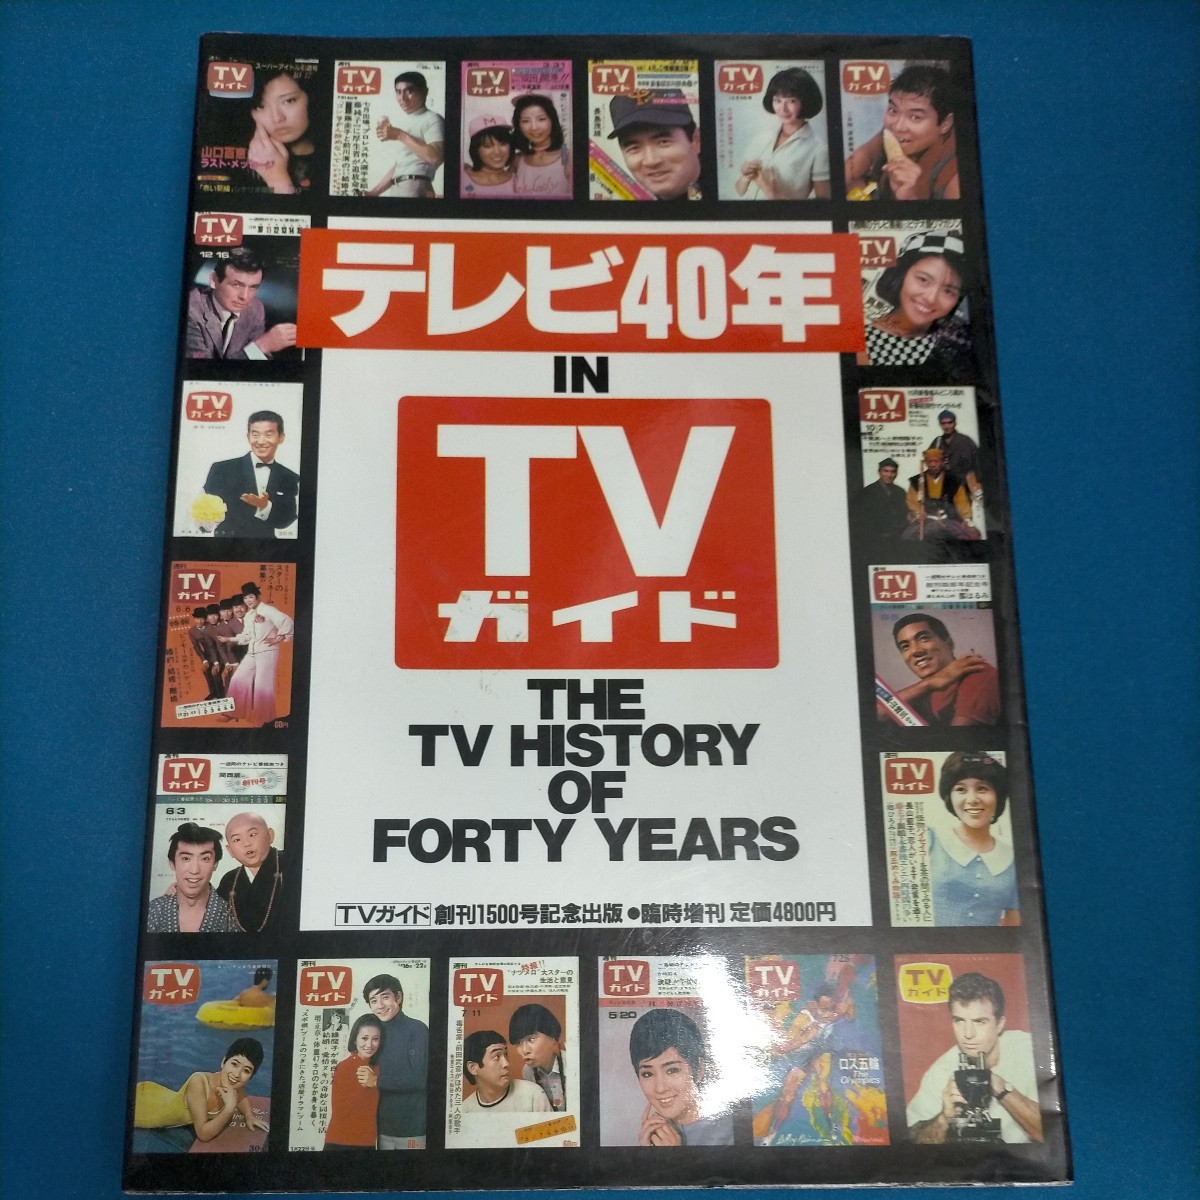 テレビ40年 IN TVガイド TVガイド創刊1500号記念 臨時増刊 1991